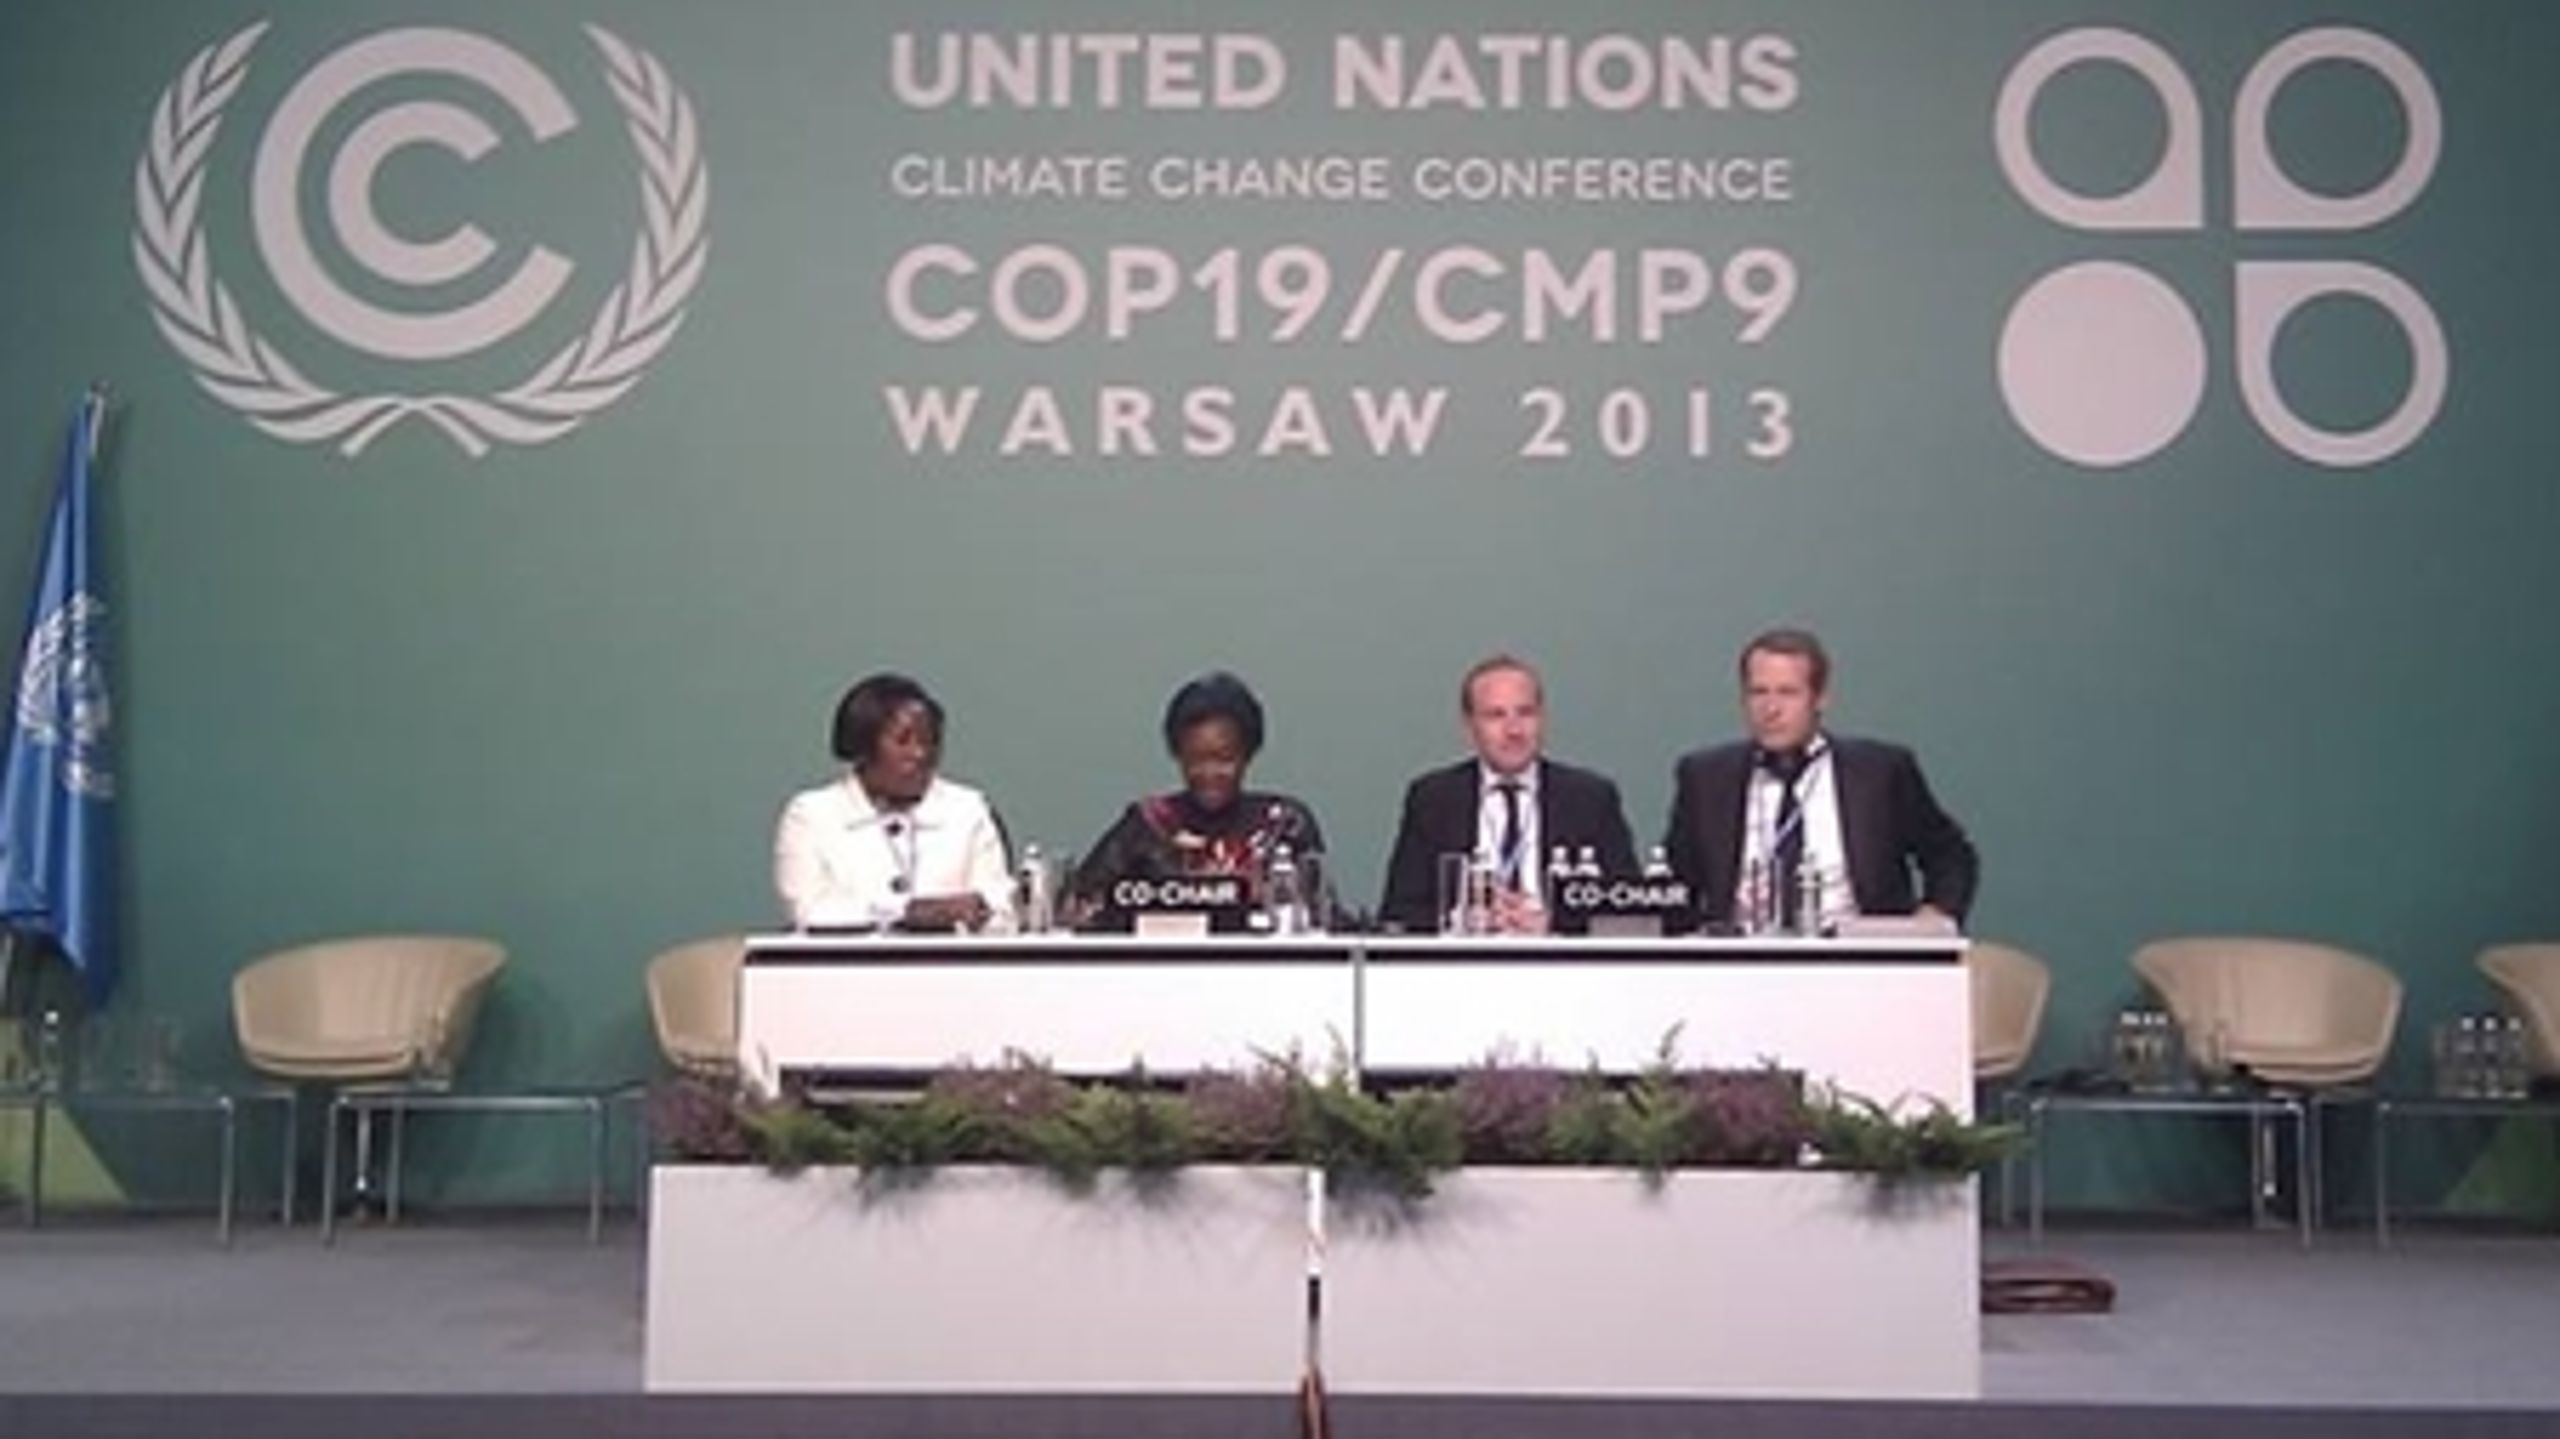 Verdens rige lande valgte at bruge COP19 til at udskyde de svære beslutninger til senere.